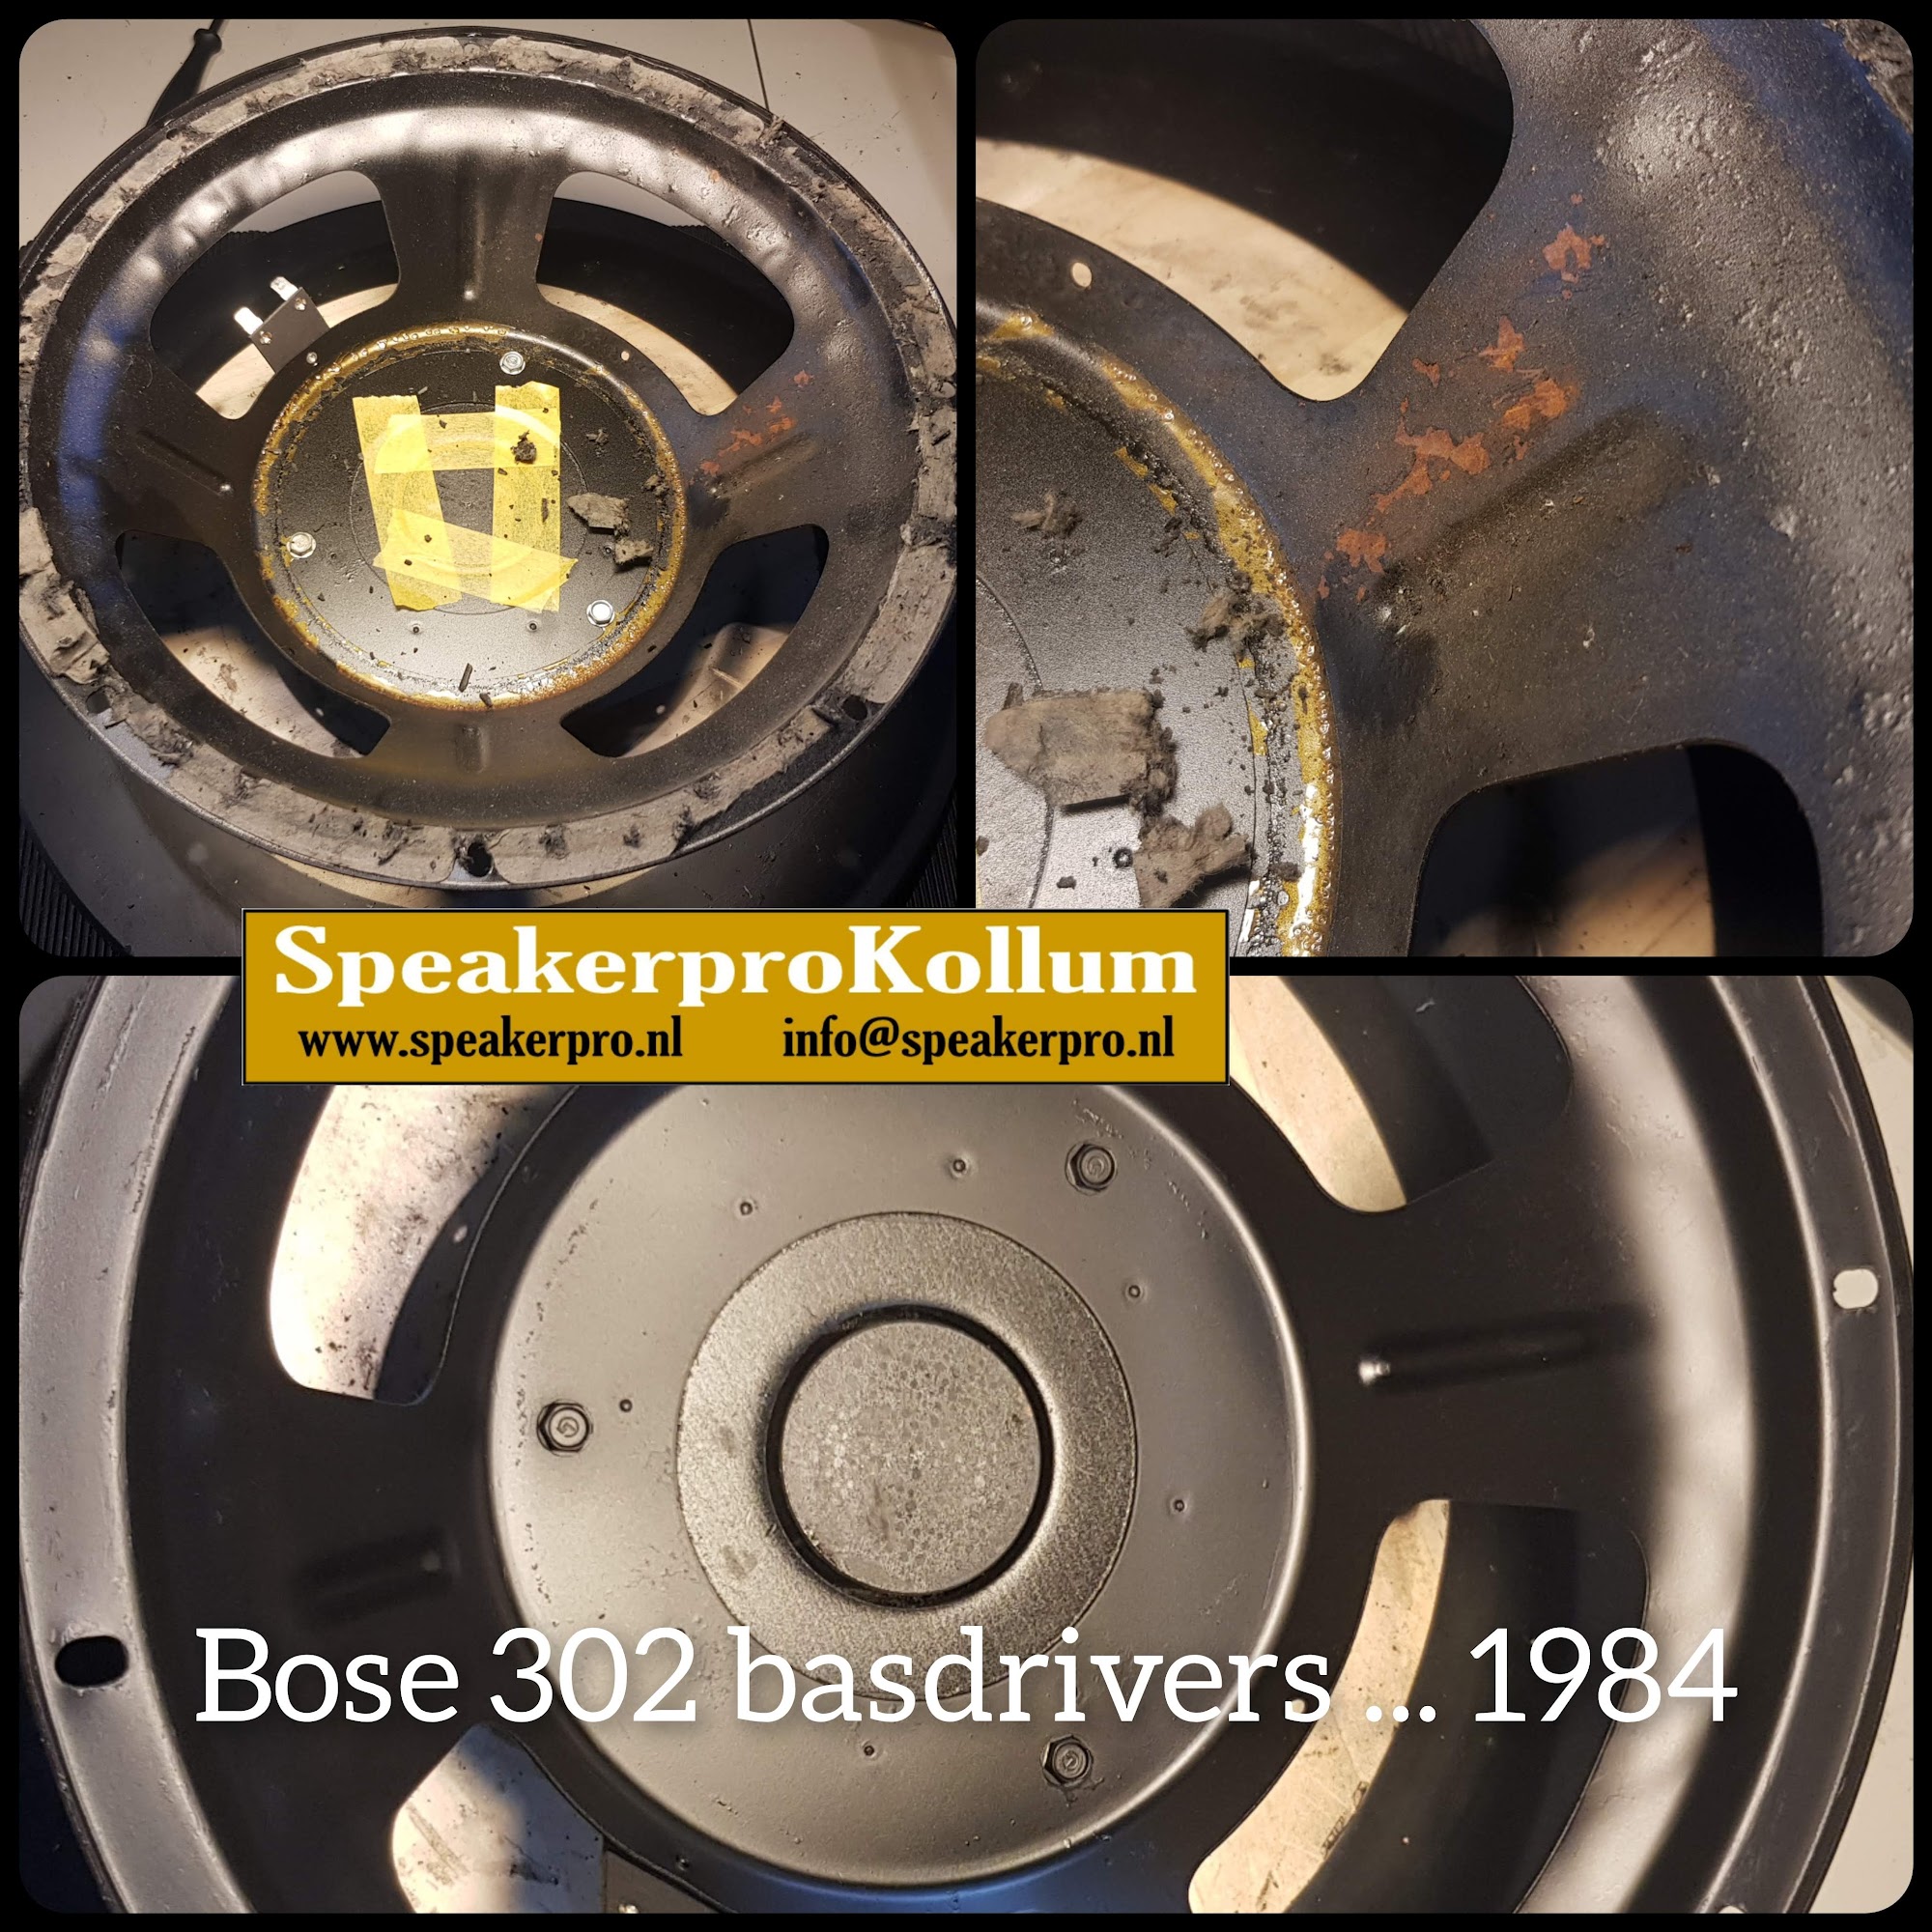 SpeakerproKollum luidspreker reparatie / speaker reparatie / recone service / refoam service